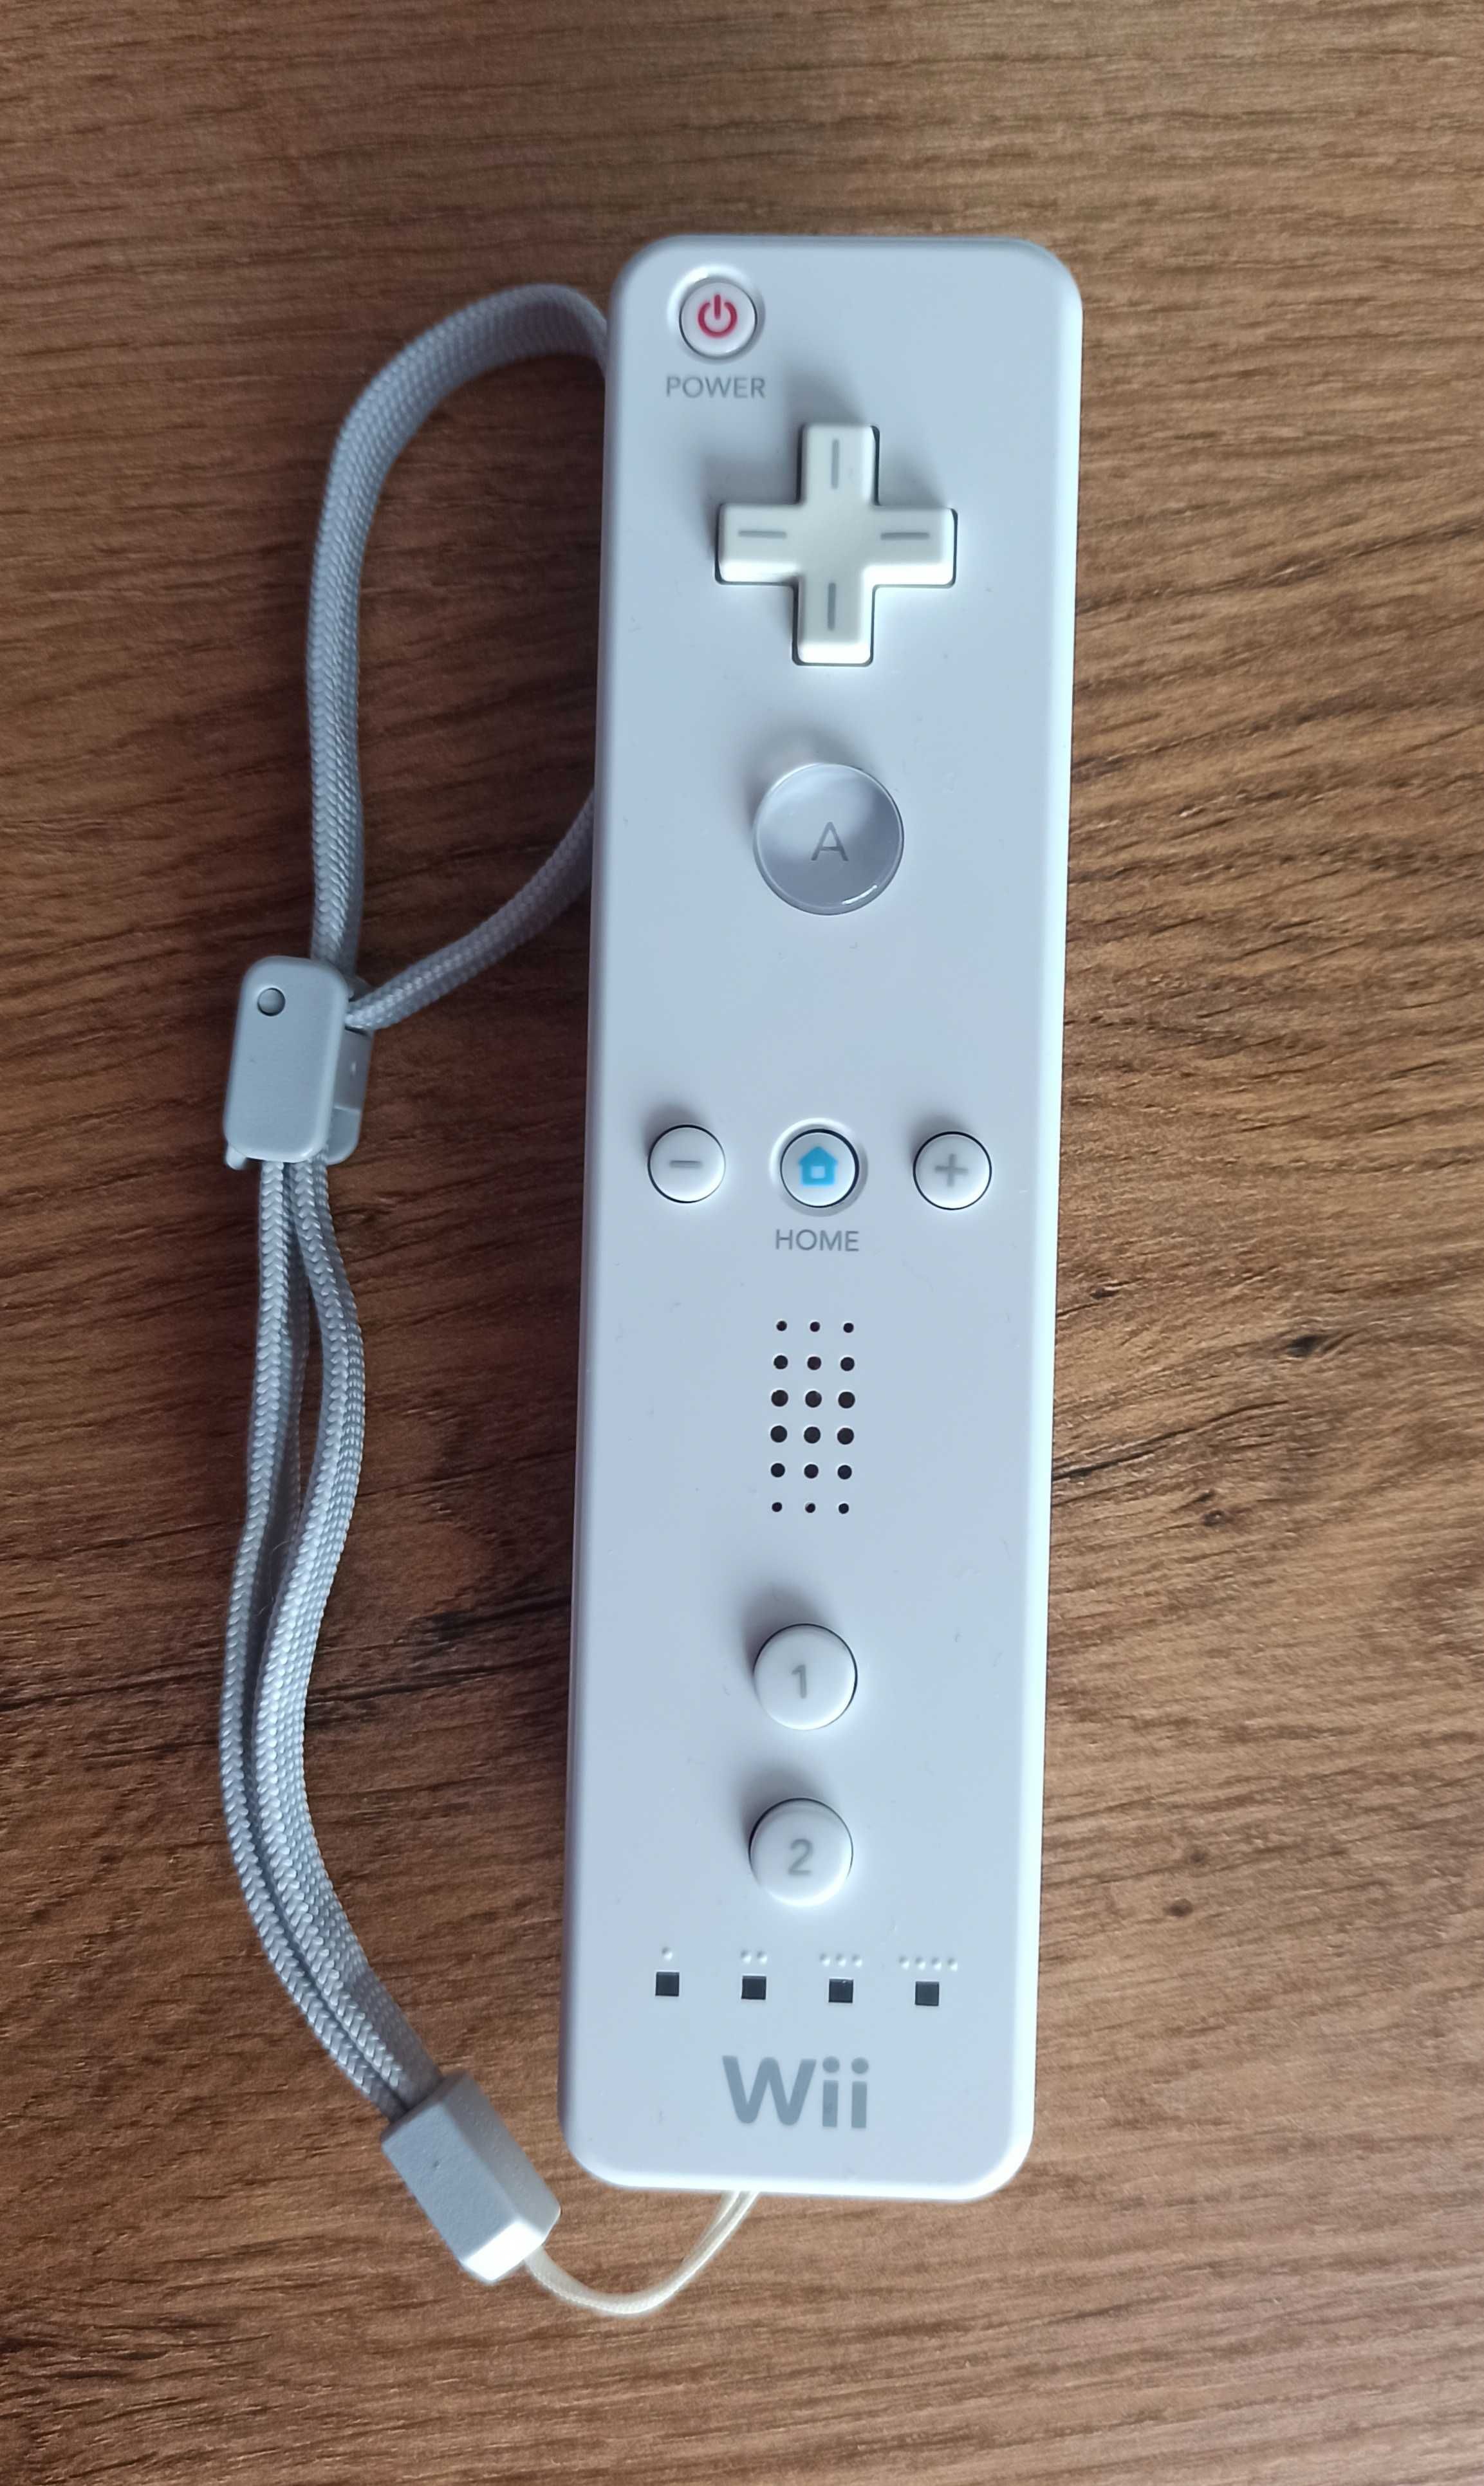 Oryginalny Nintendo Wii PIlot/Remote RVL-003 Biały + Smycz